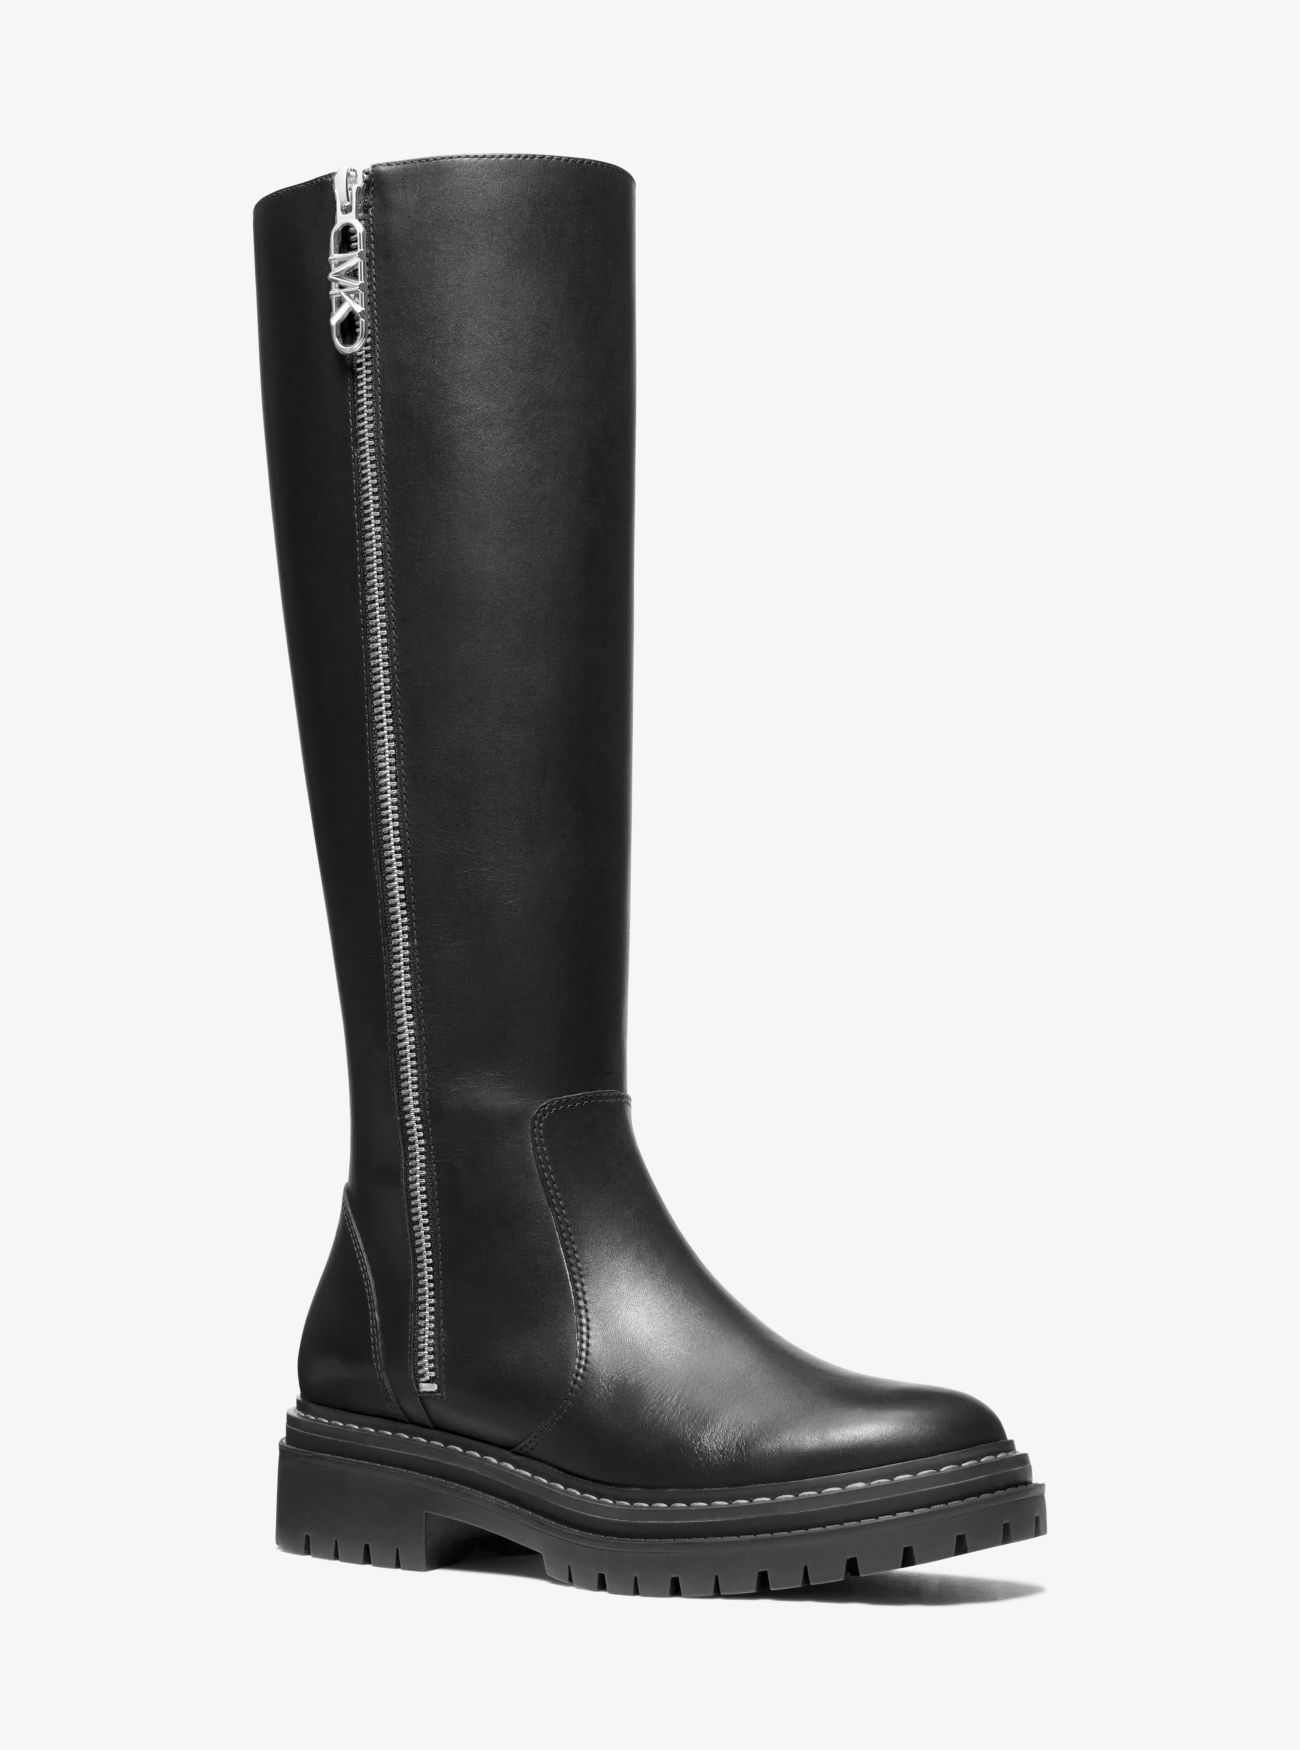 MK Regan Leather Boot - Black - Michael Kors